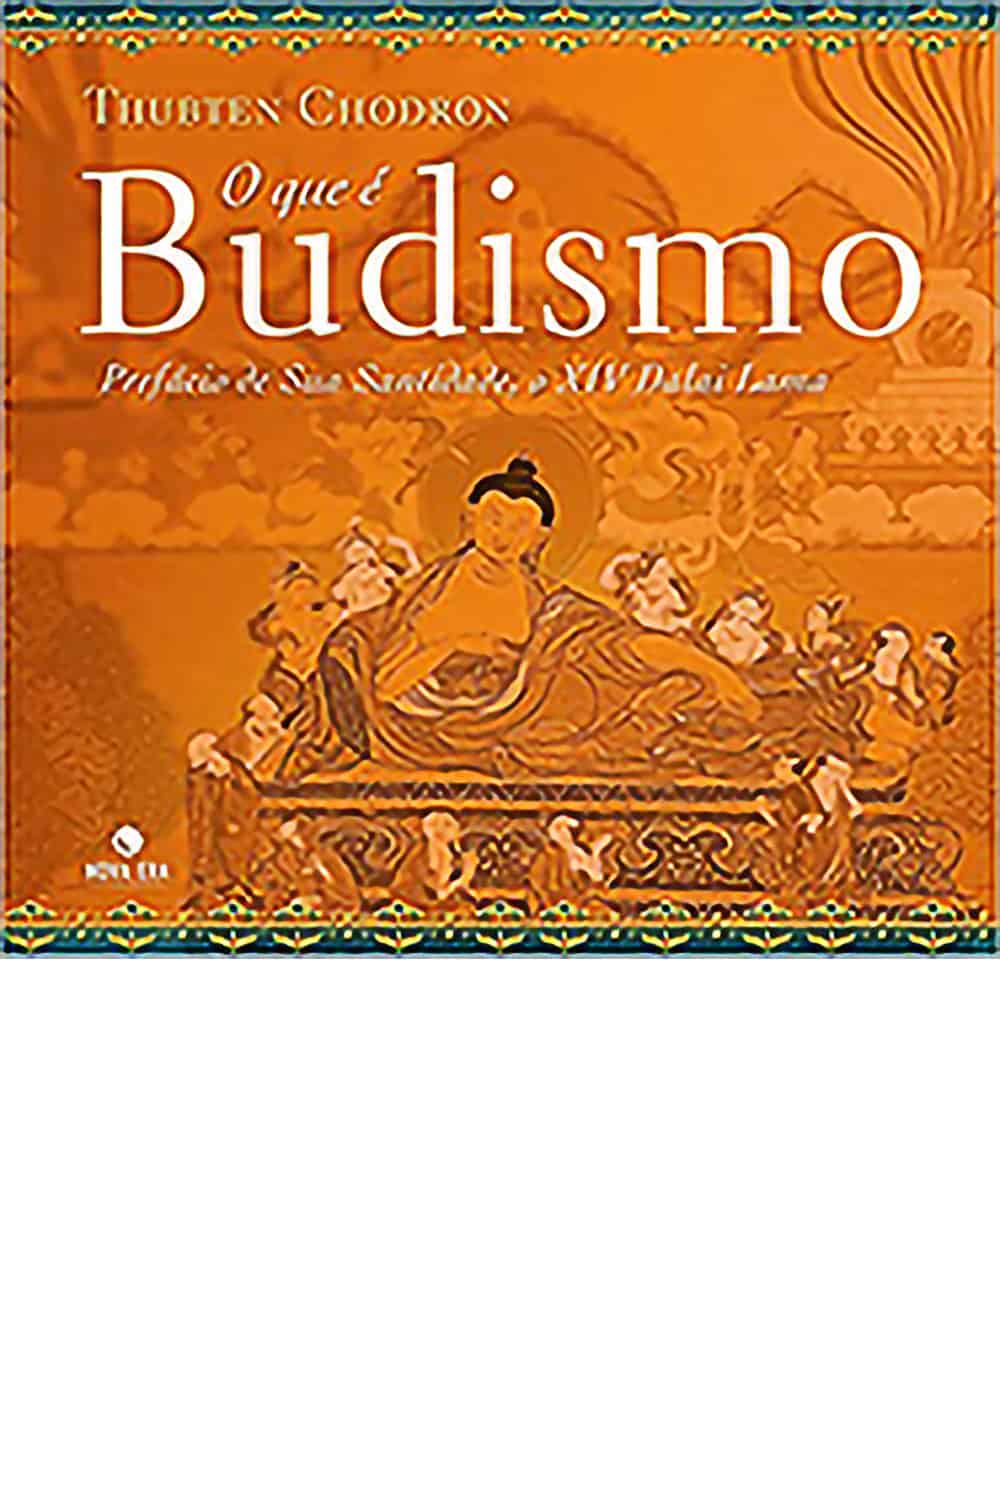 Okładka buddyzmu dla początkujących w języku portugalskim